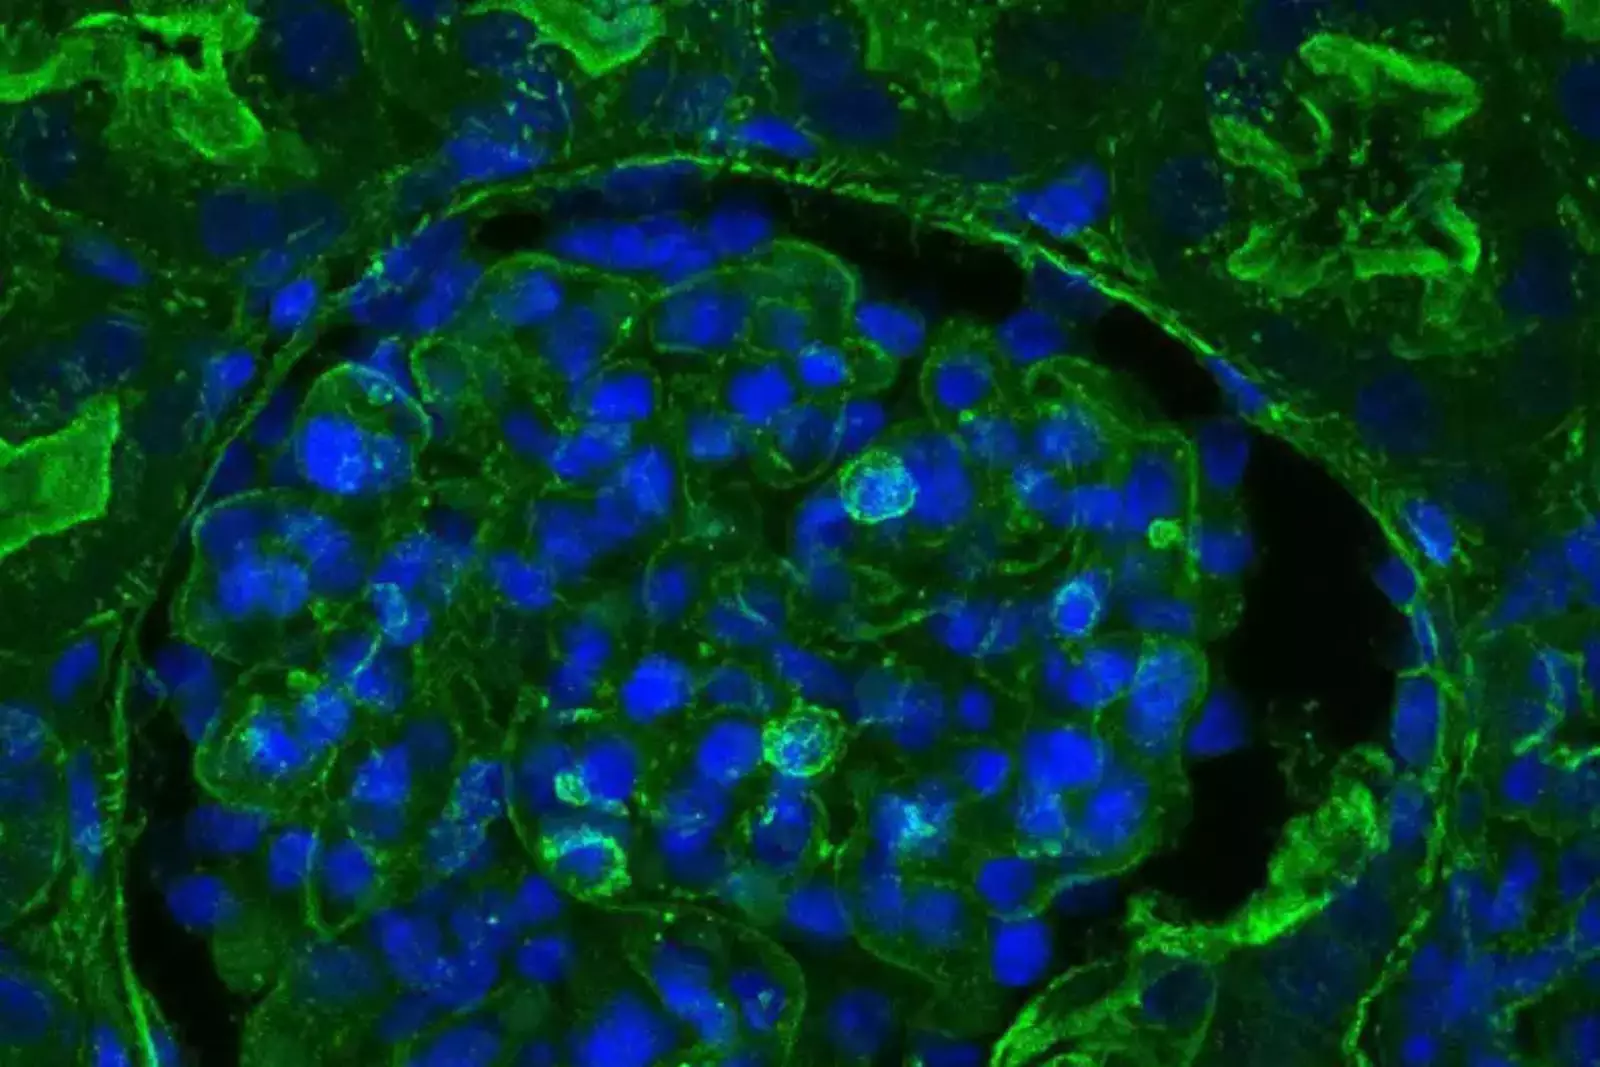 Ткань почки свиньи после лечения OrganEx. Зеленое пятно показывает бета-актин цитоскелета, который выглядит более тусклым, если клетка повреждена.